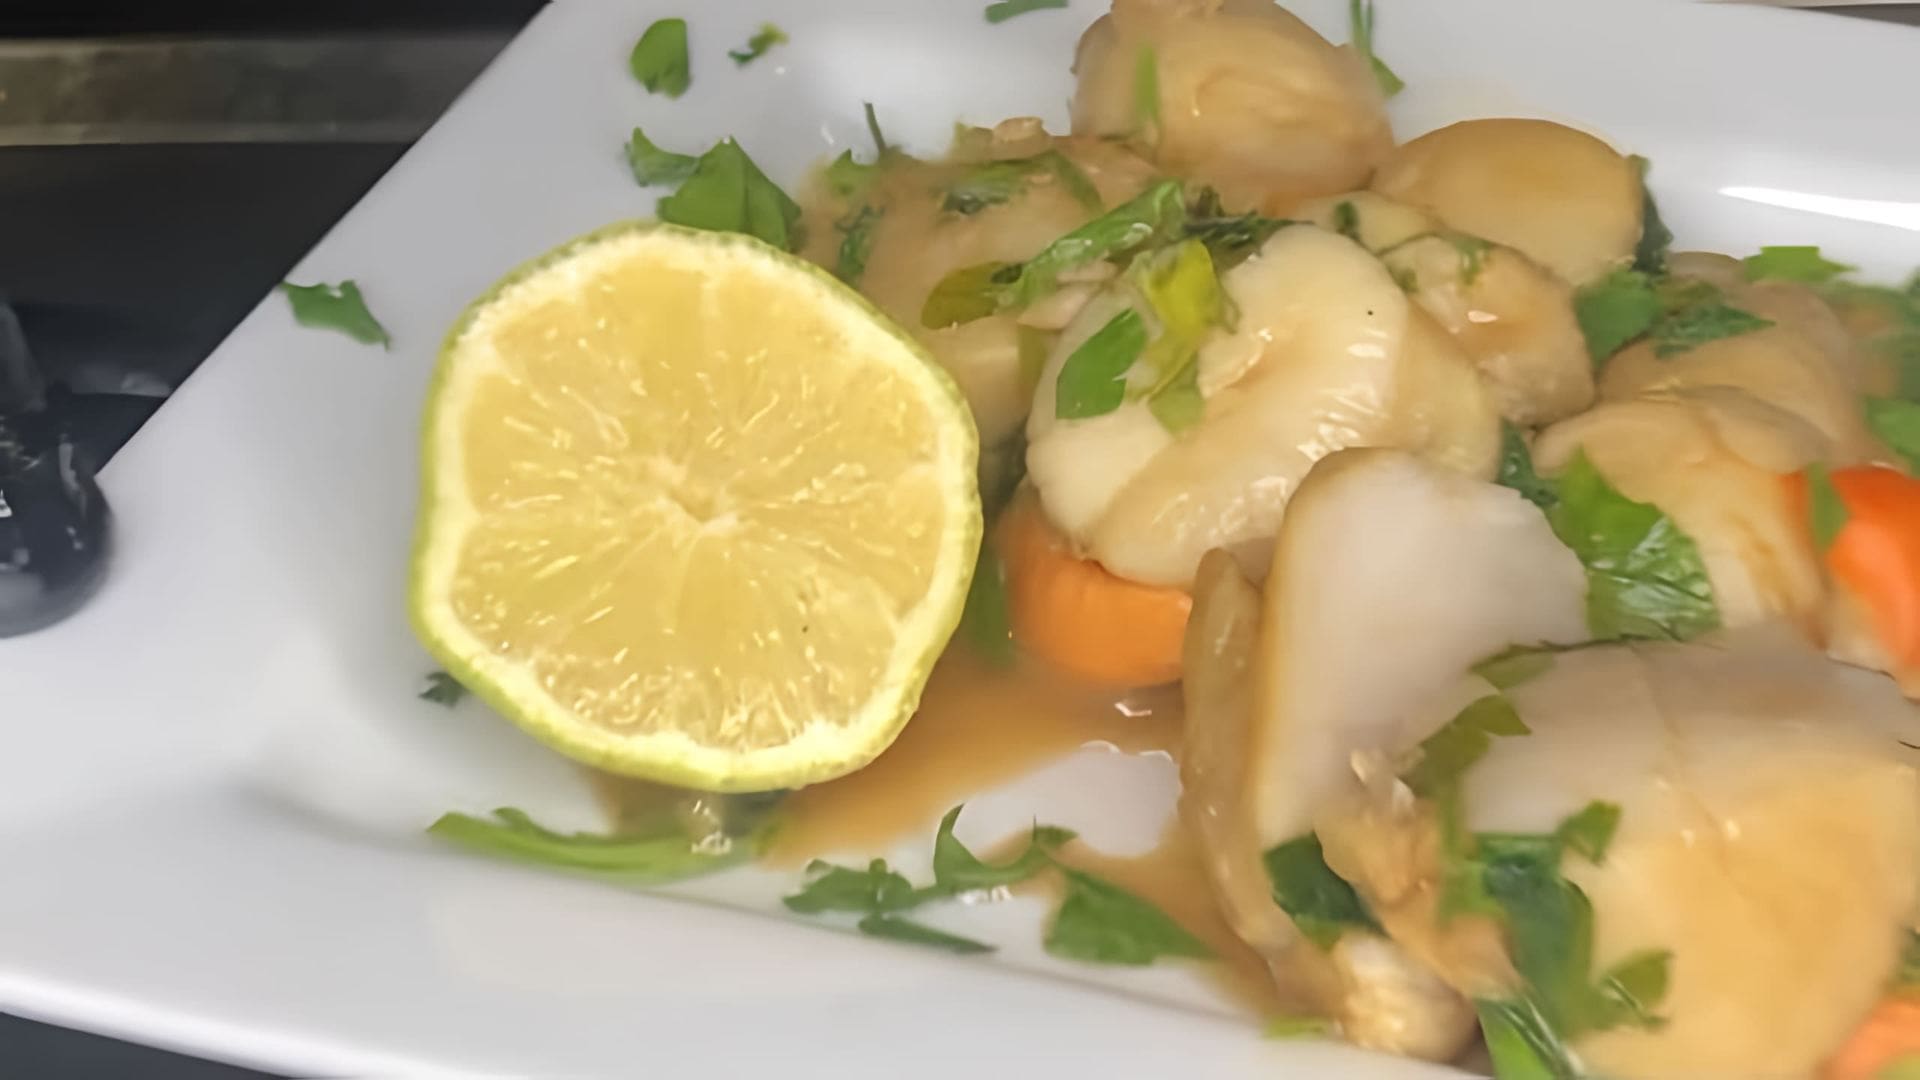 В данном видео демонстрируется рецепт приготовления морских гребешков